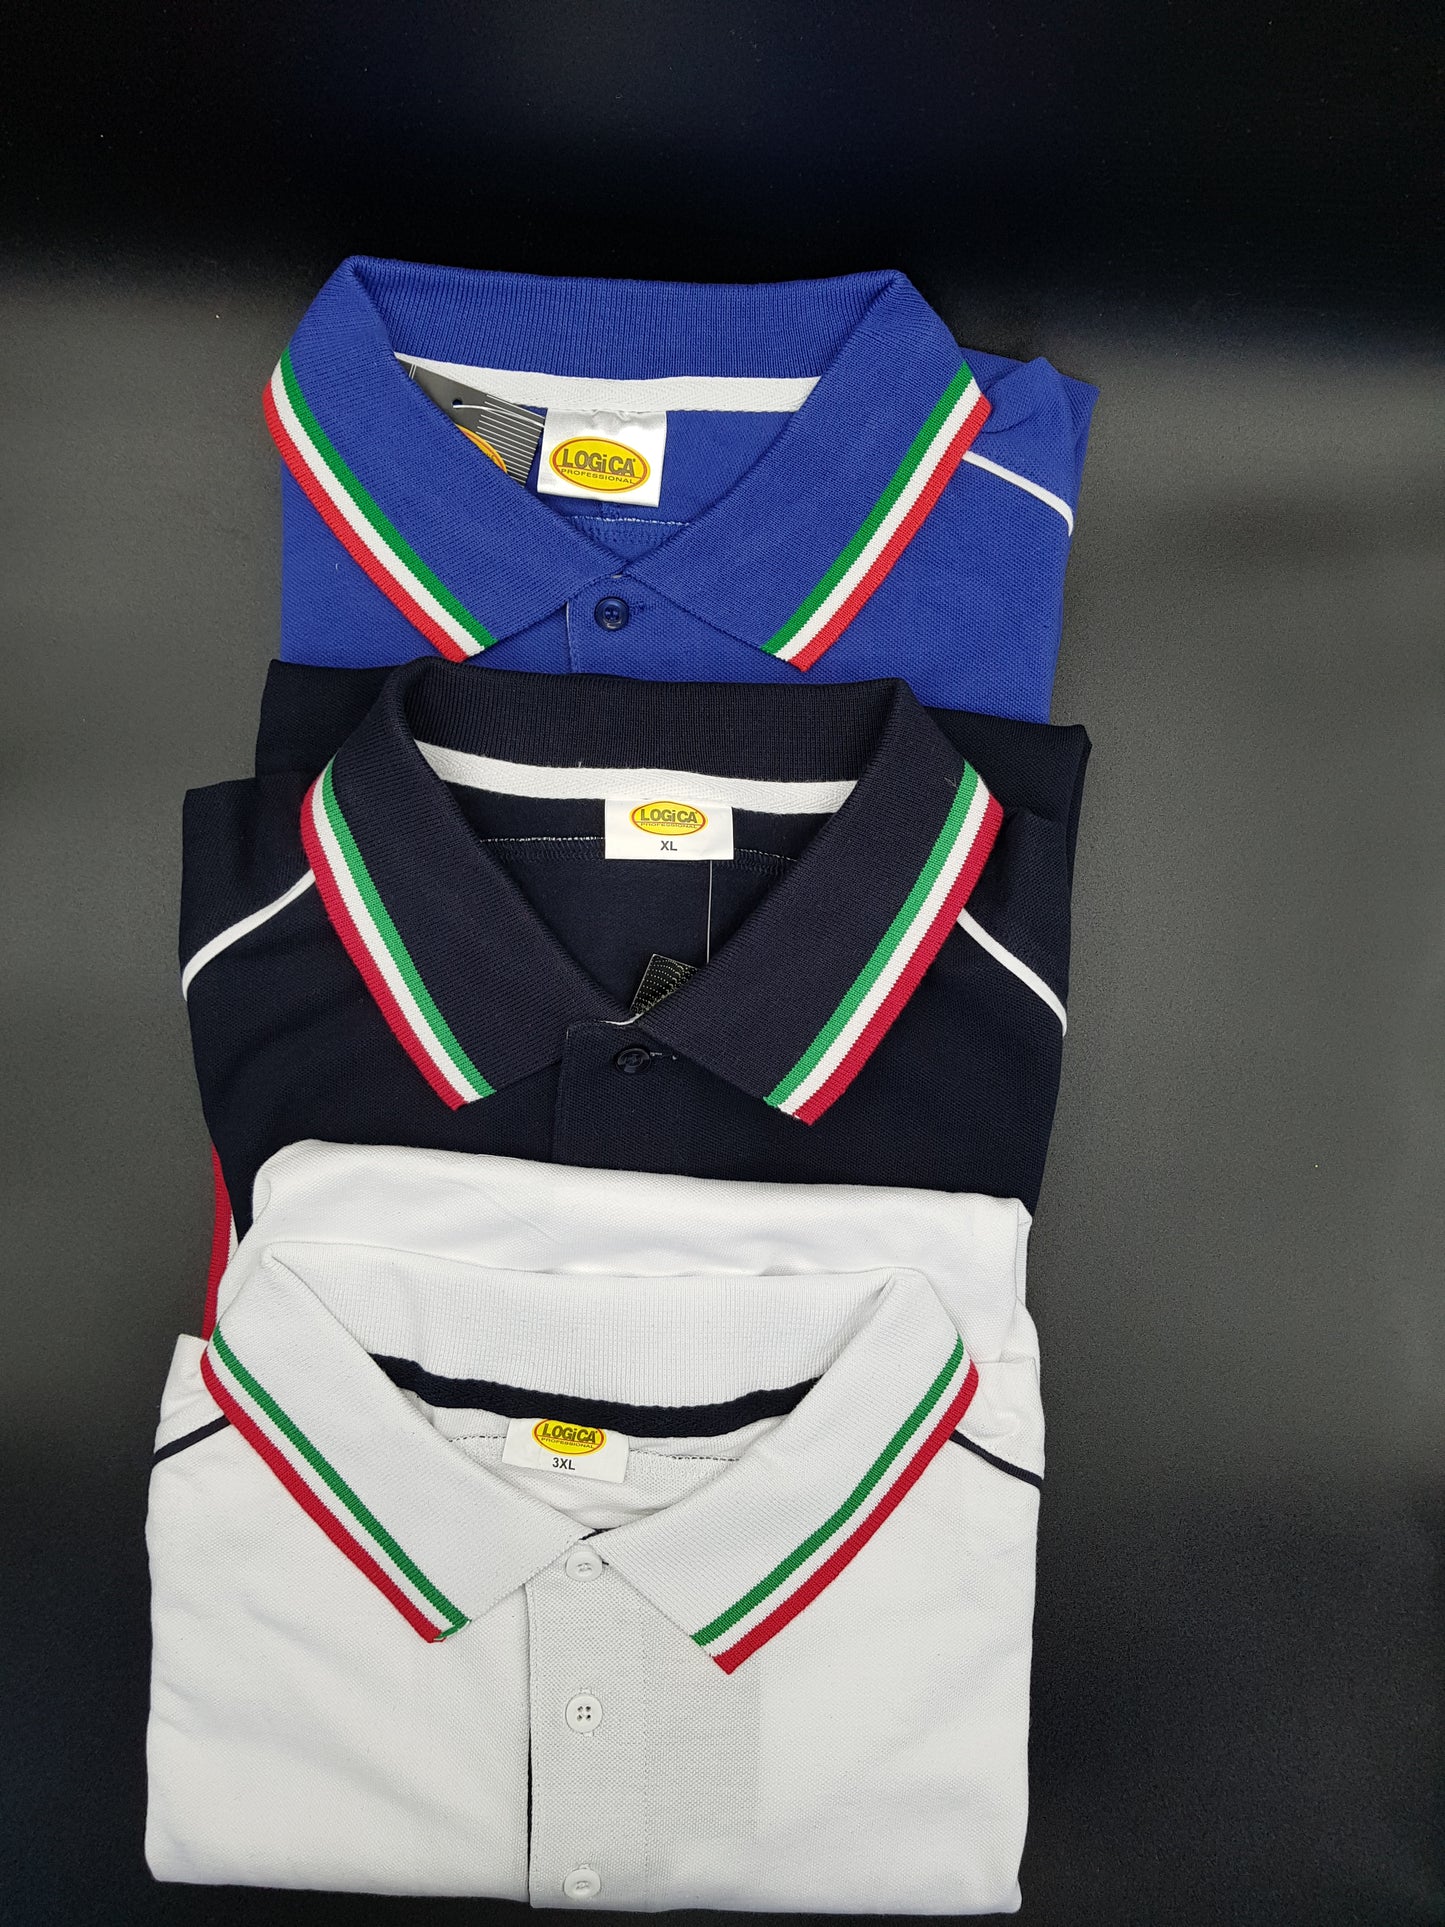 Polo manica corta con bordi tricolore mod. Euro 2012